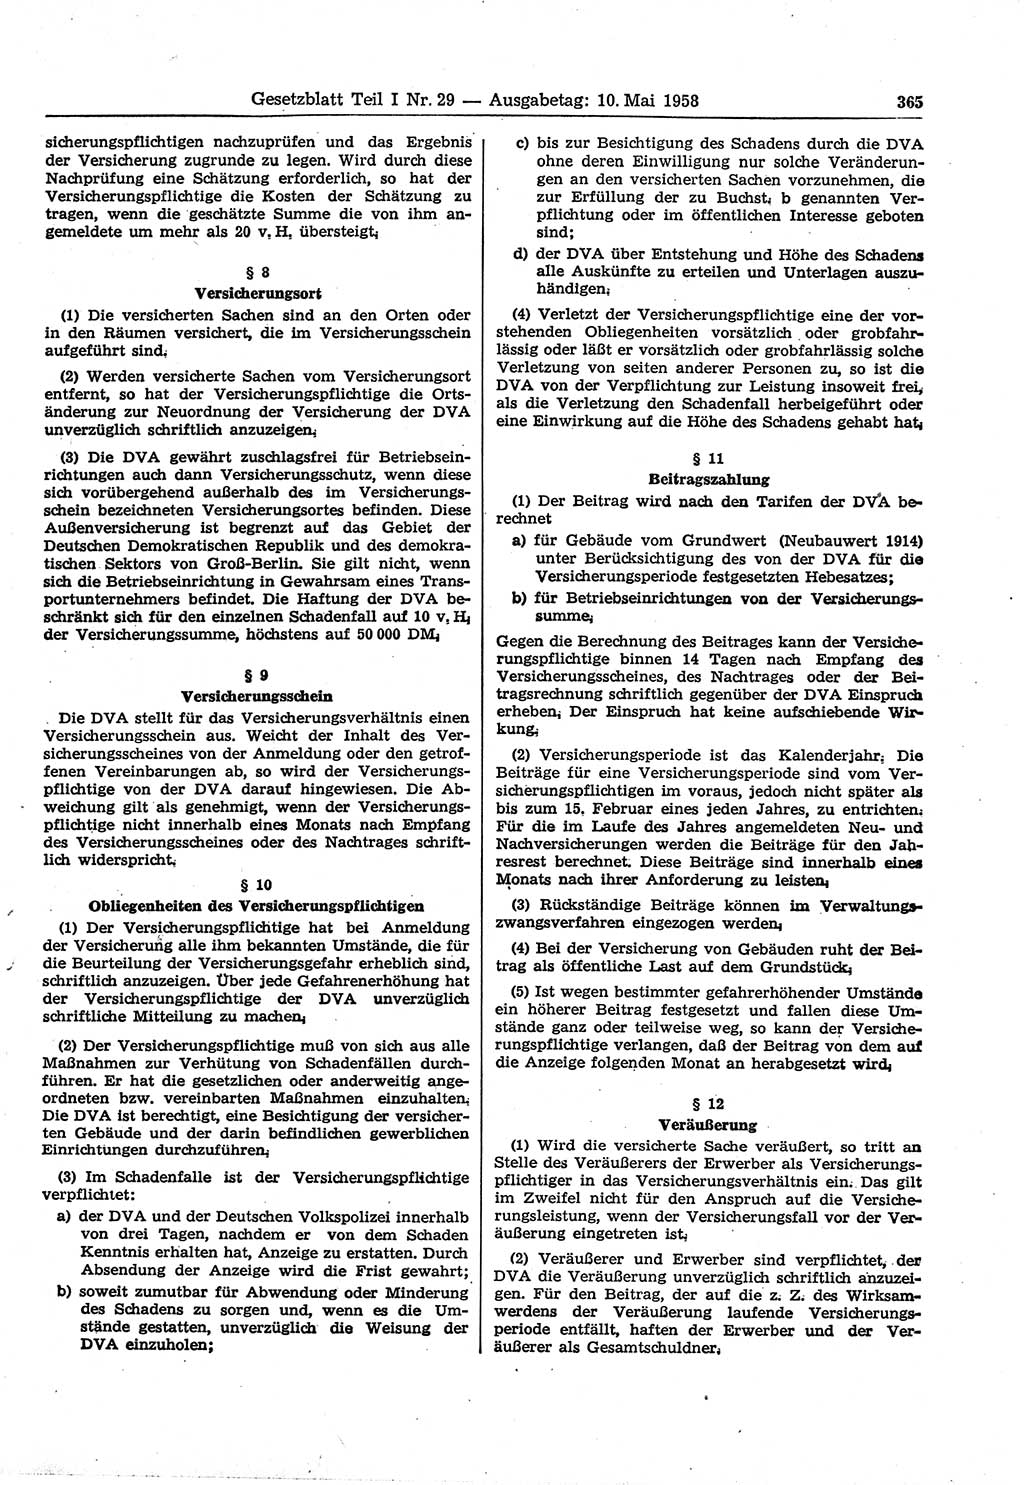 Gesetzblatt (GBl.) der Deutschen Demokratischen Republik (DDR) Teil Ⅰ 1958, Seite 365 (GBl. DDR Ⅰ 1958, S. 365)